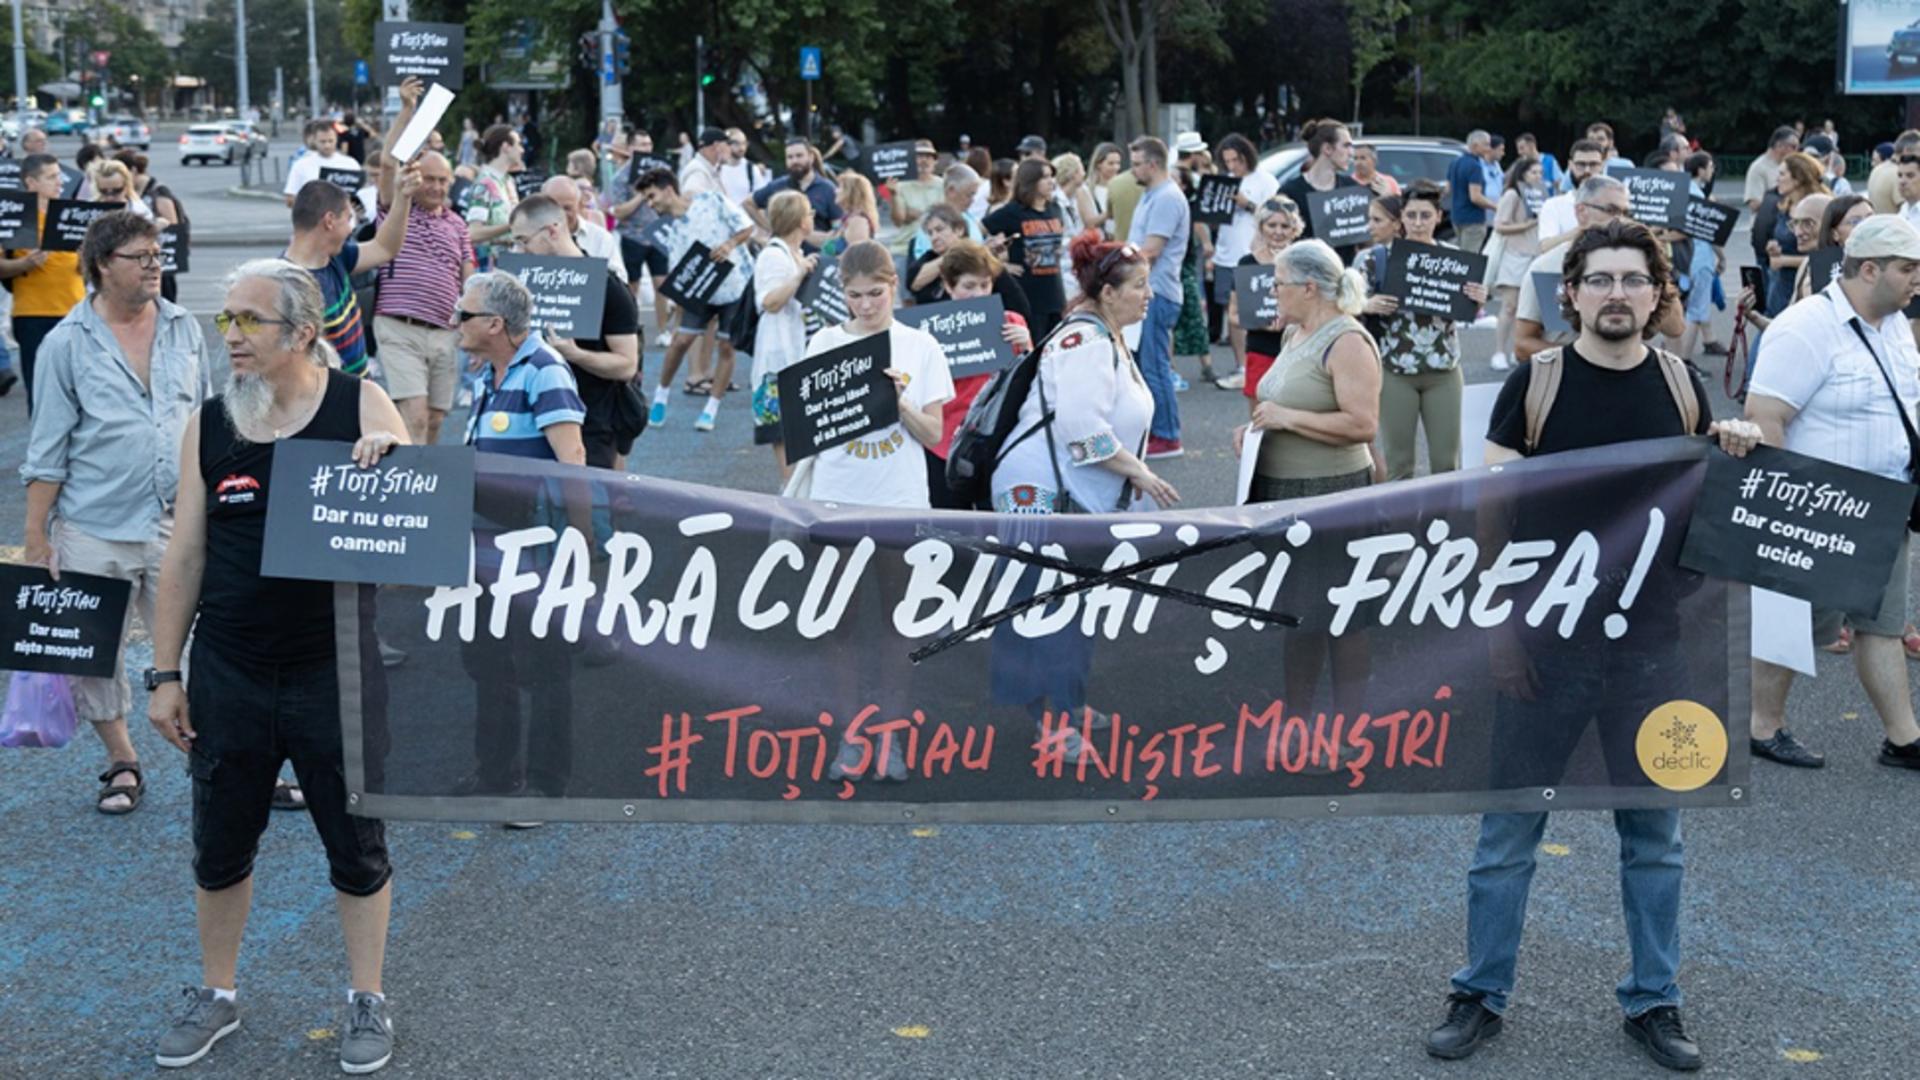 Peste 200 de persoane protestează în Piața Victoriei: „După demisii e nevoie de soluții” FOTO